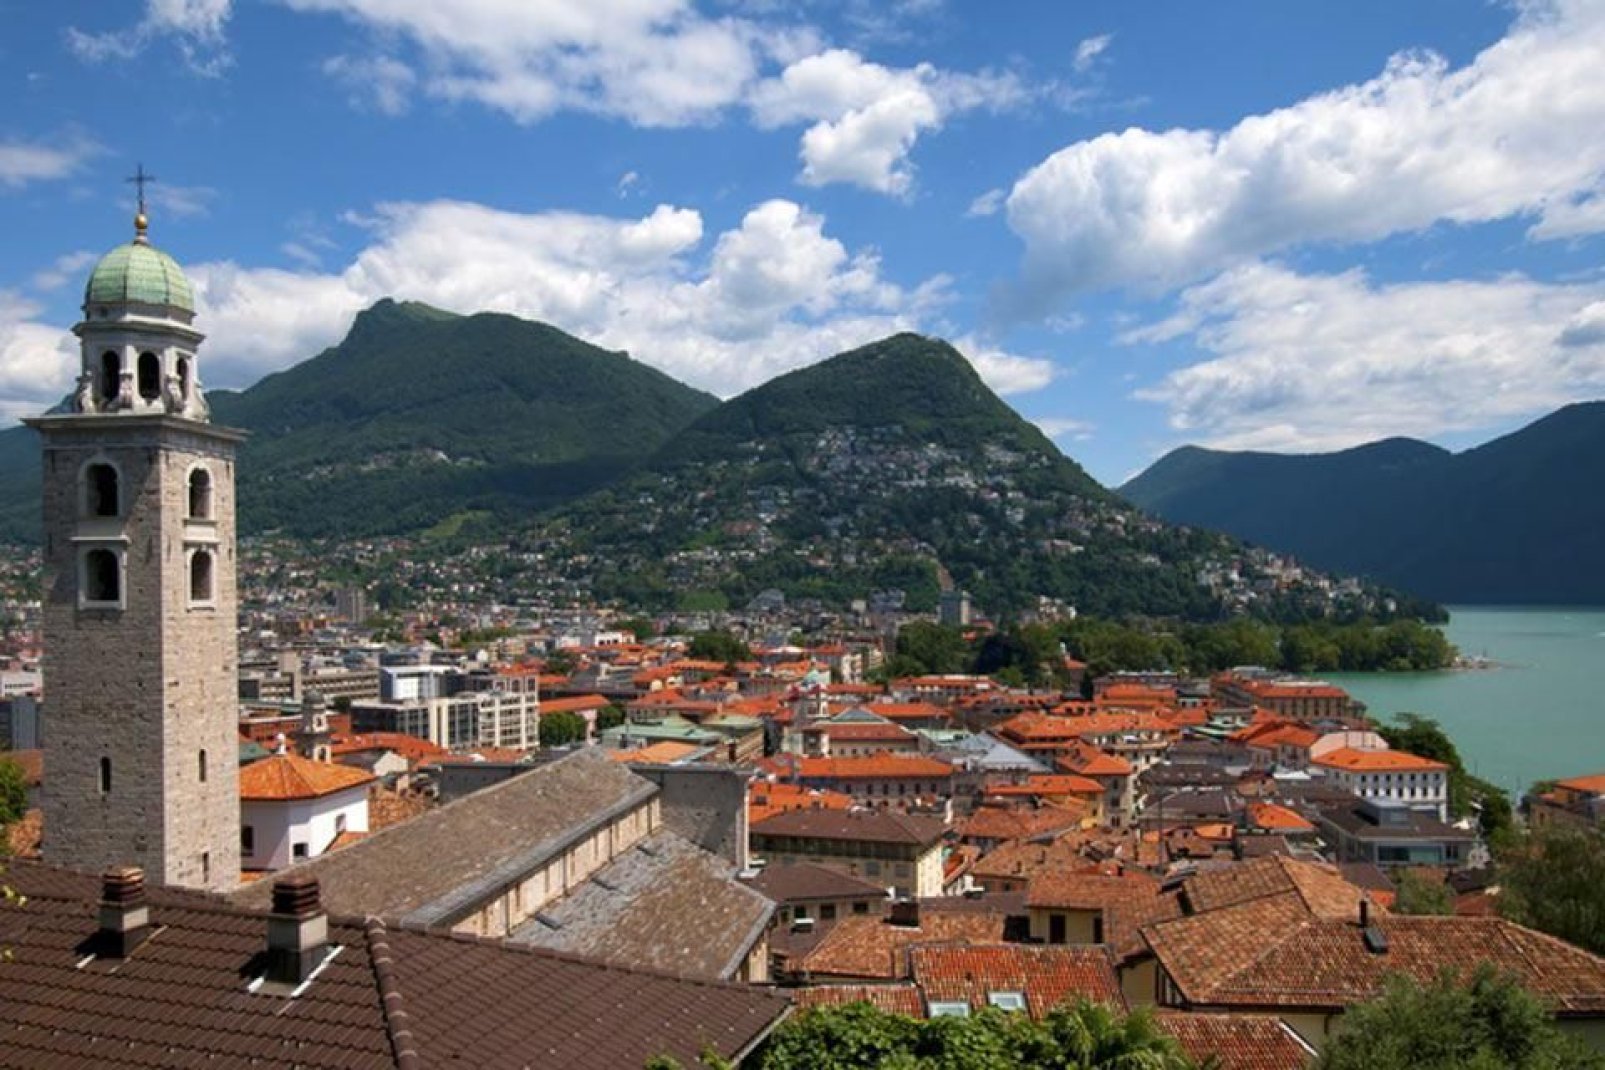 Die Stadt Lugano zhlt mehr als 55.000 Einwohner.